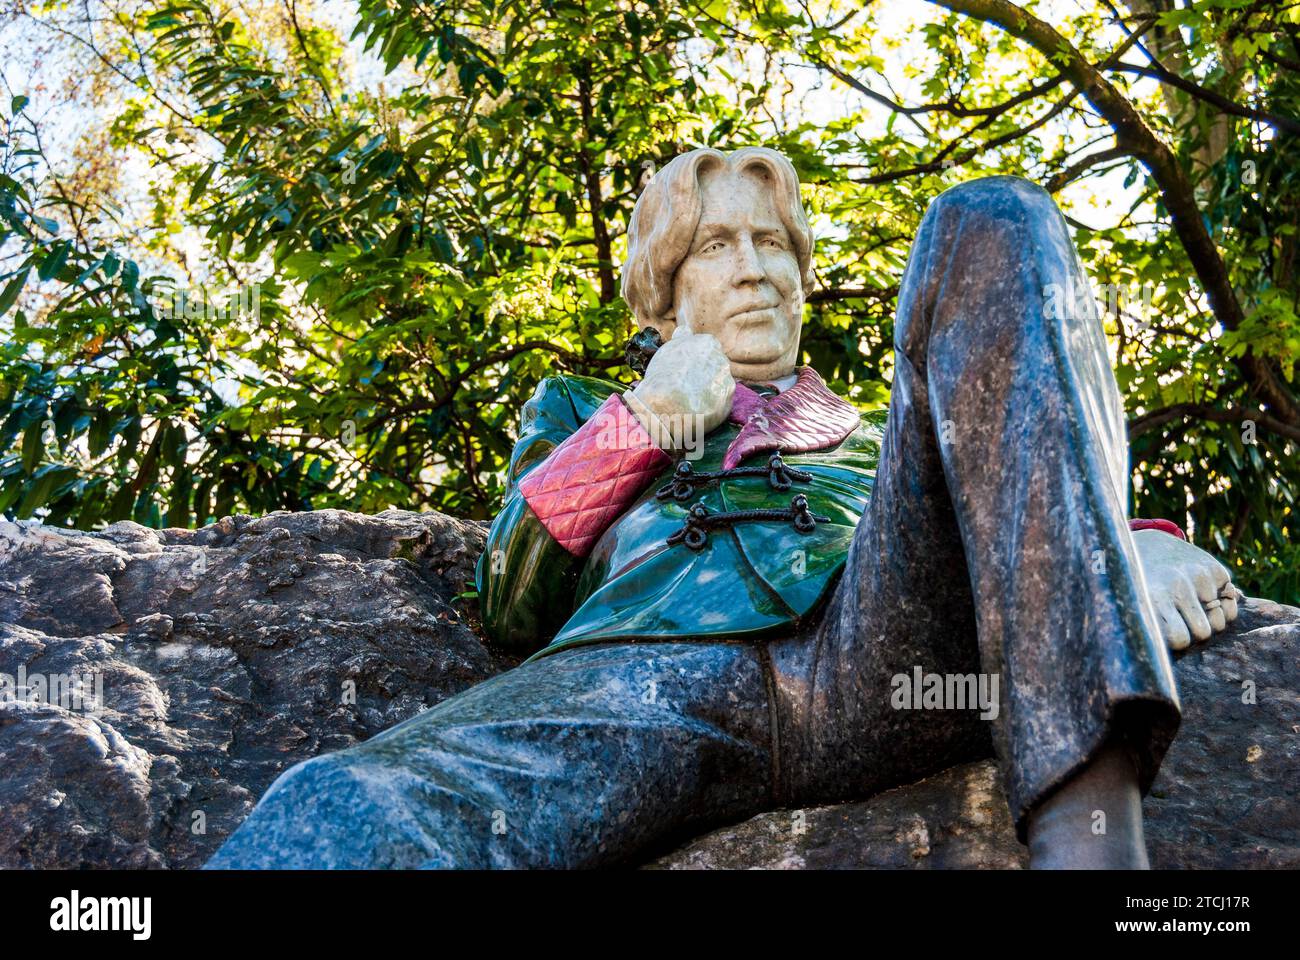 Gros plan sur la statue en marbre et granit de l'écrivain irlandais Oscar Wilde, sculpture commémorative dans le parc de Merrion Square, centre-ville de Dublin, Irlande Banque D'Images